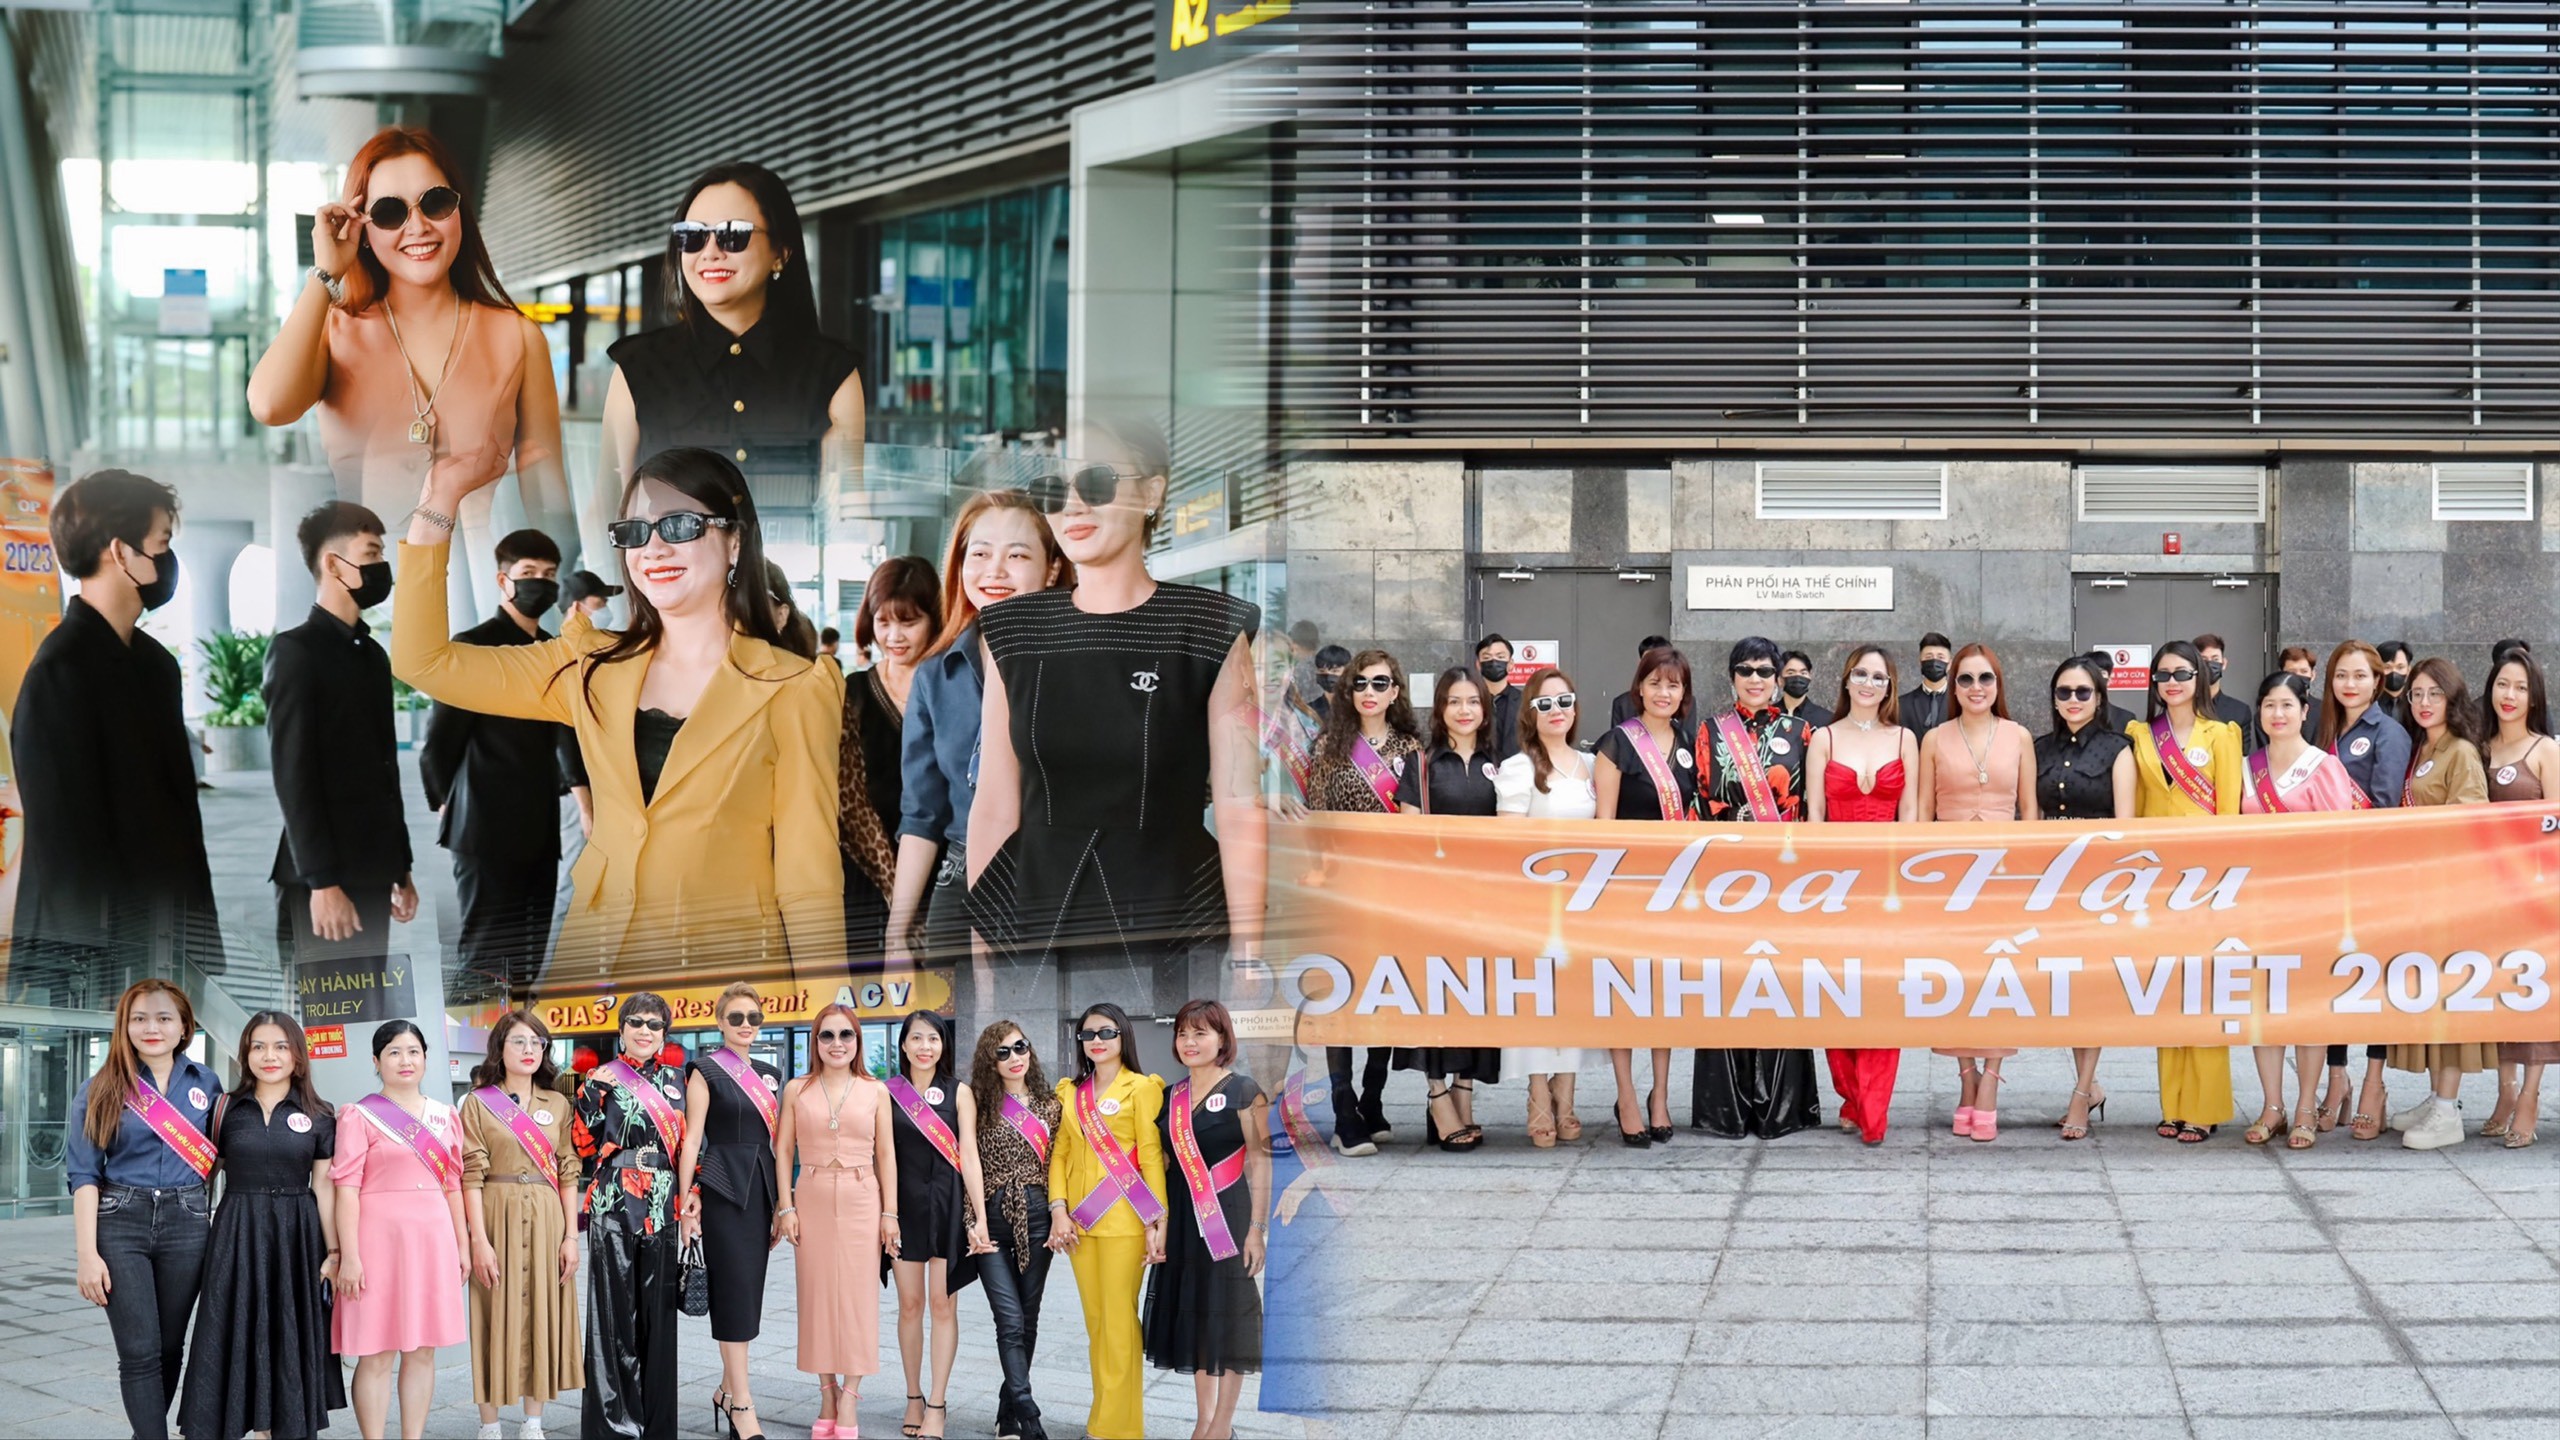 Hình ảnh ngày đầu “nhập cuộc” của dàn thí sinh Hoa hậu Doanh nhân Đất Việt 2023